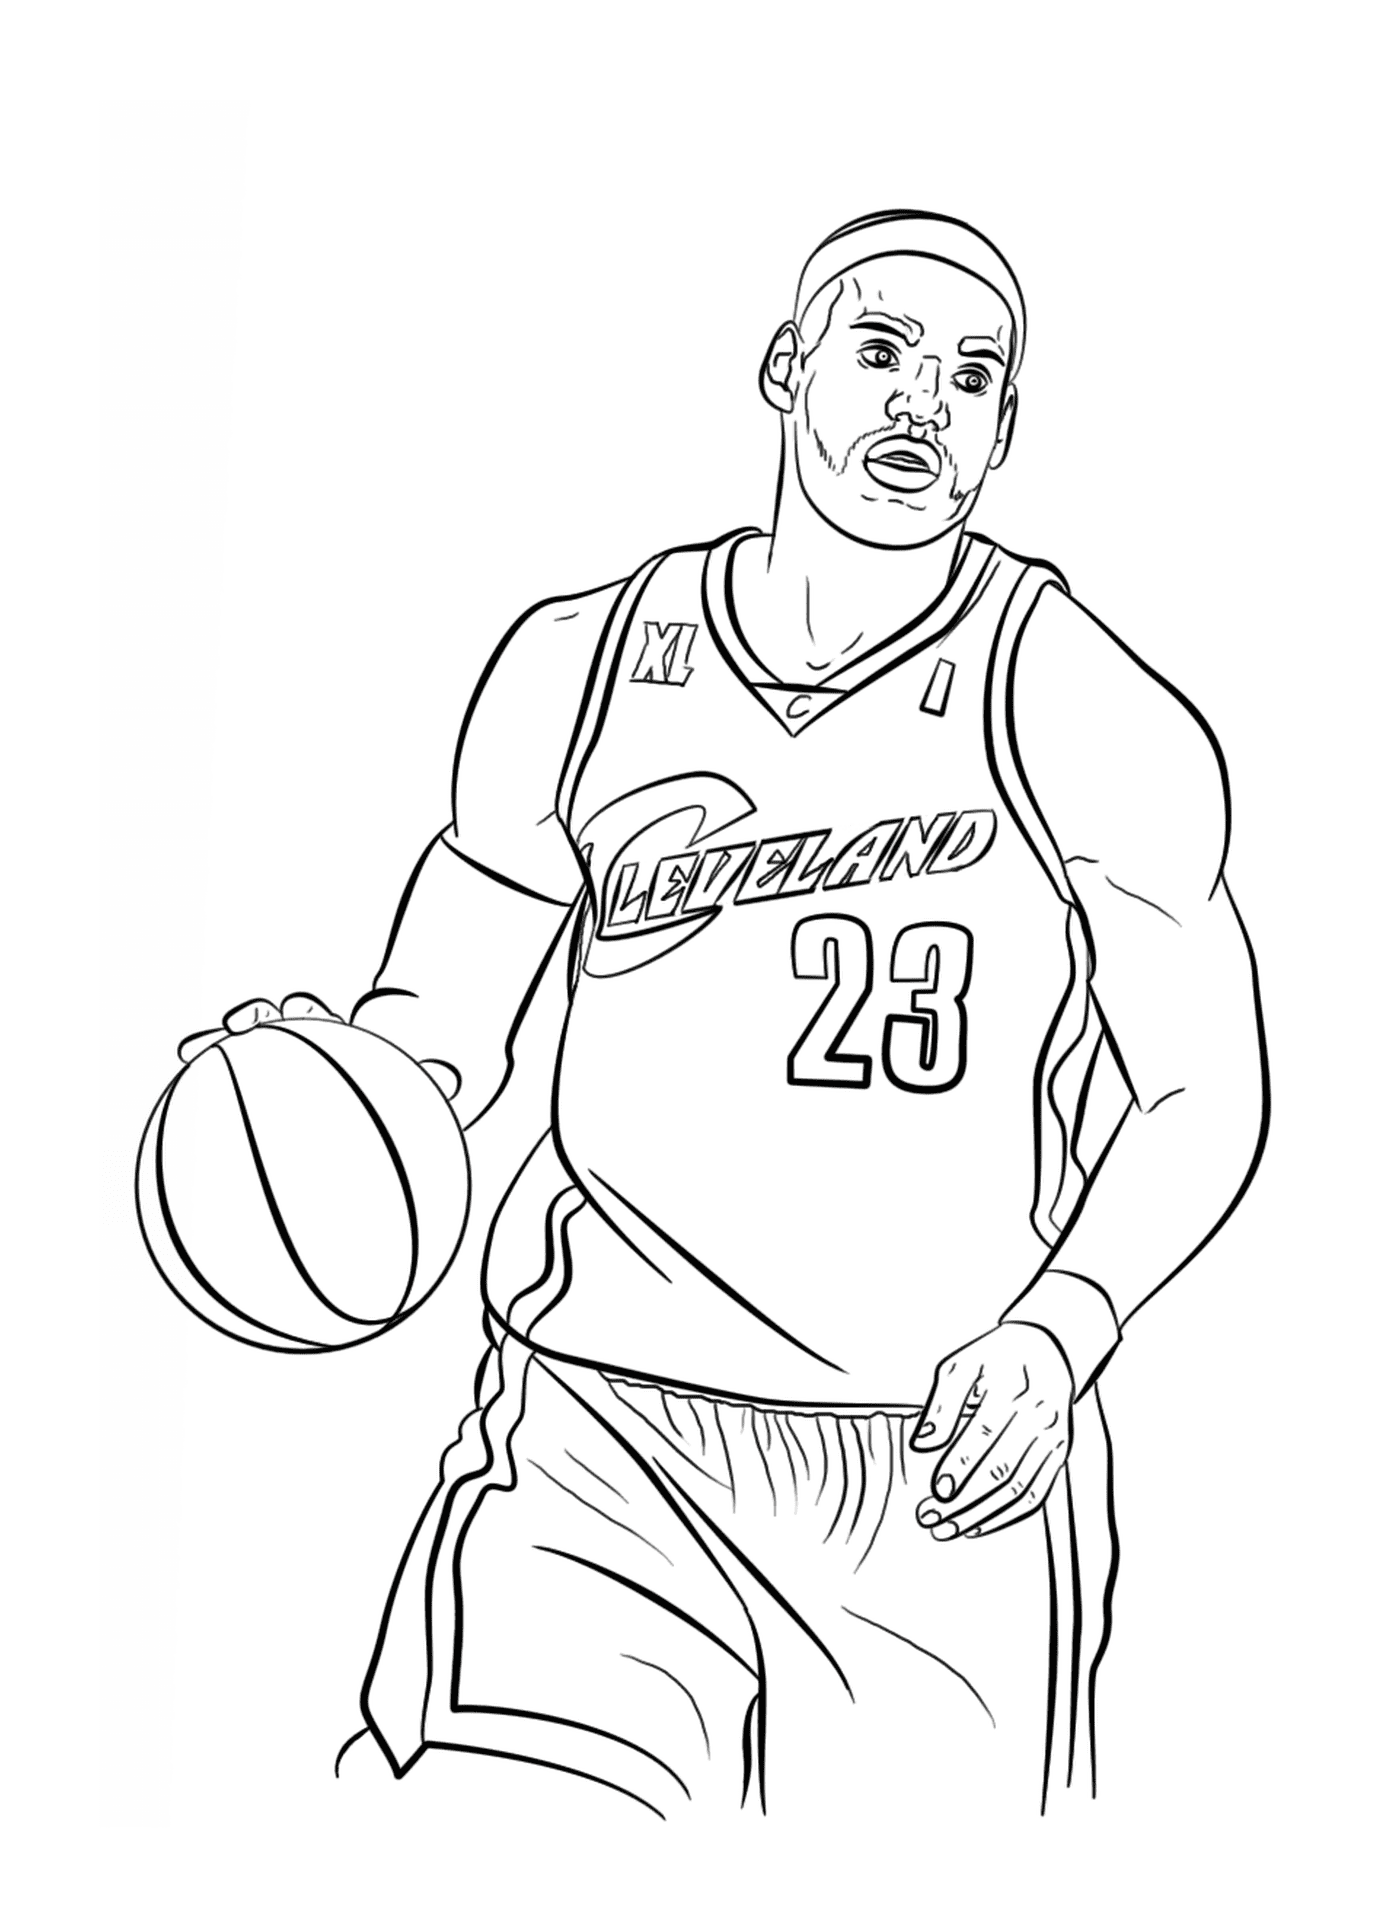  LeBron James, NBA basketball player 